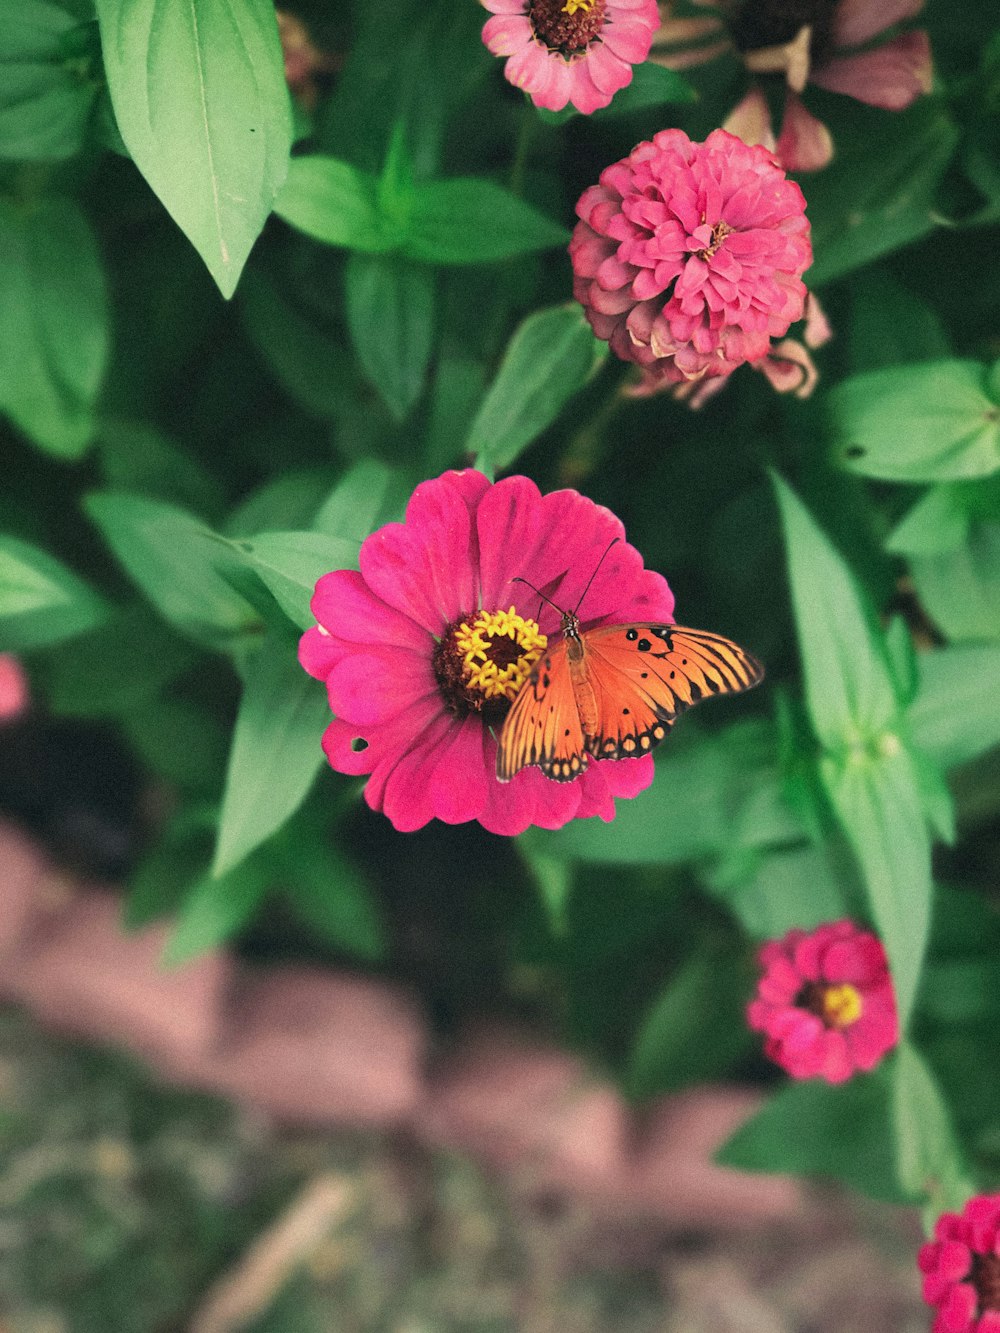 ピンクの花に咲くオレンジ色の蝶の浅い焦点写真